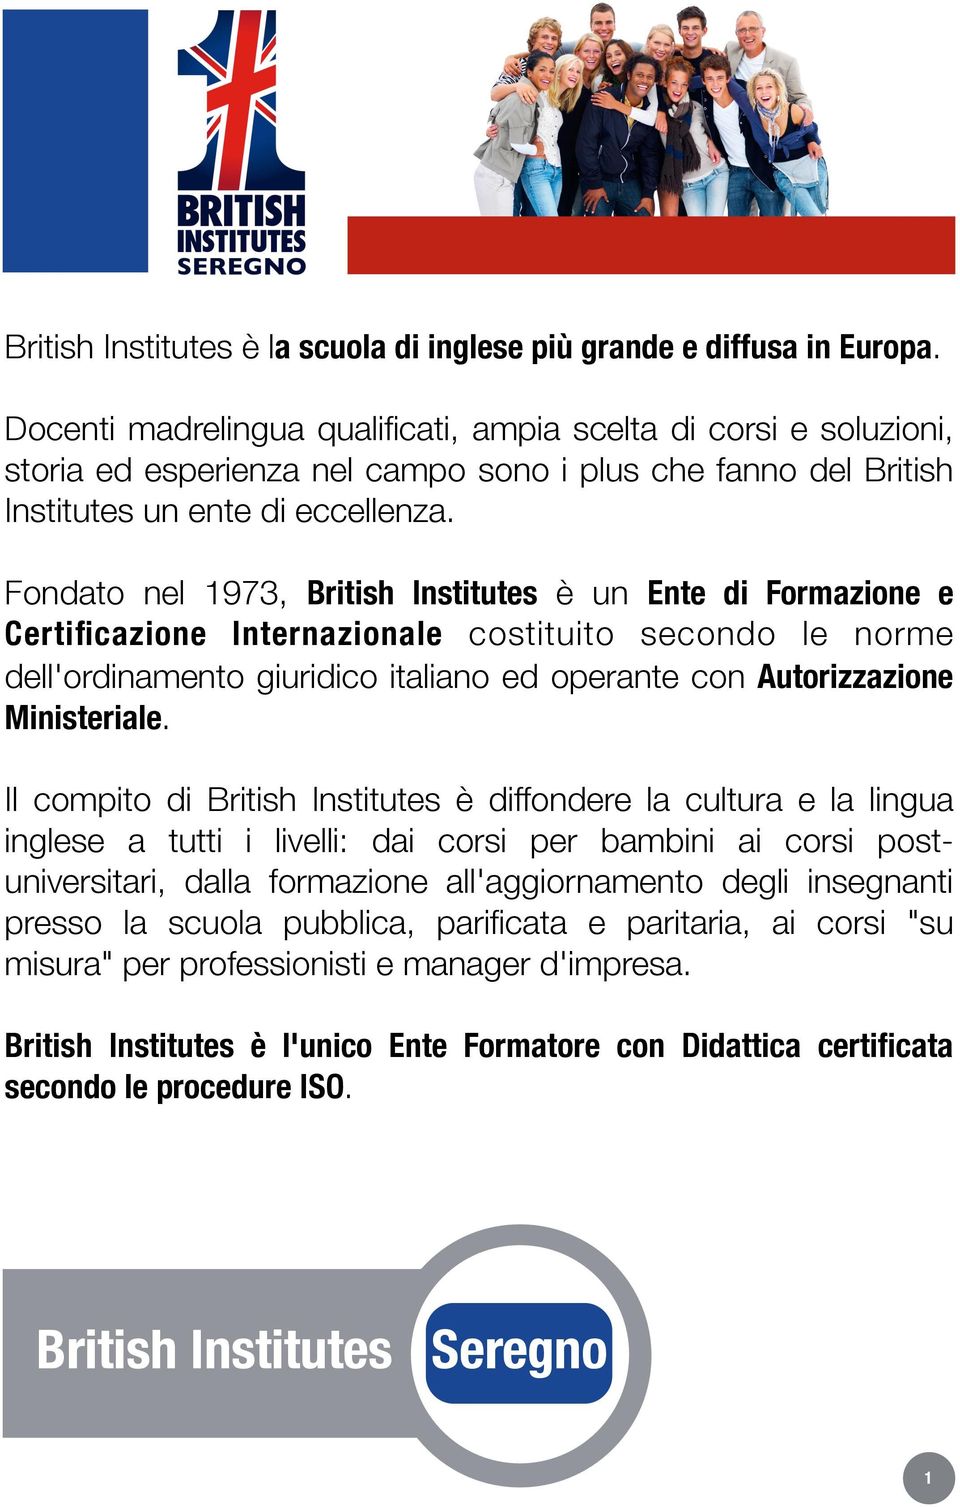 Fondato nel 1973, British Institutes è un Ente di Formazione e Certificazione Internazionale costituito secondo le norme dell'ordinamento giuridico italiano ed operante con Autorizzazione